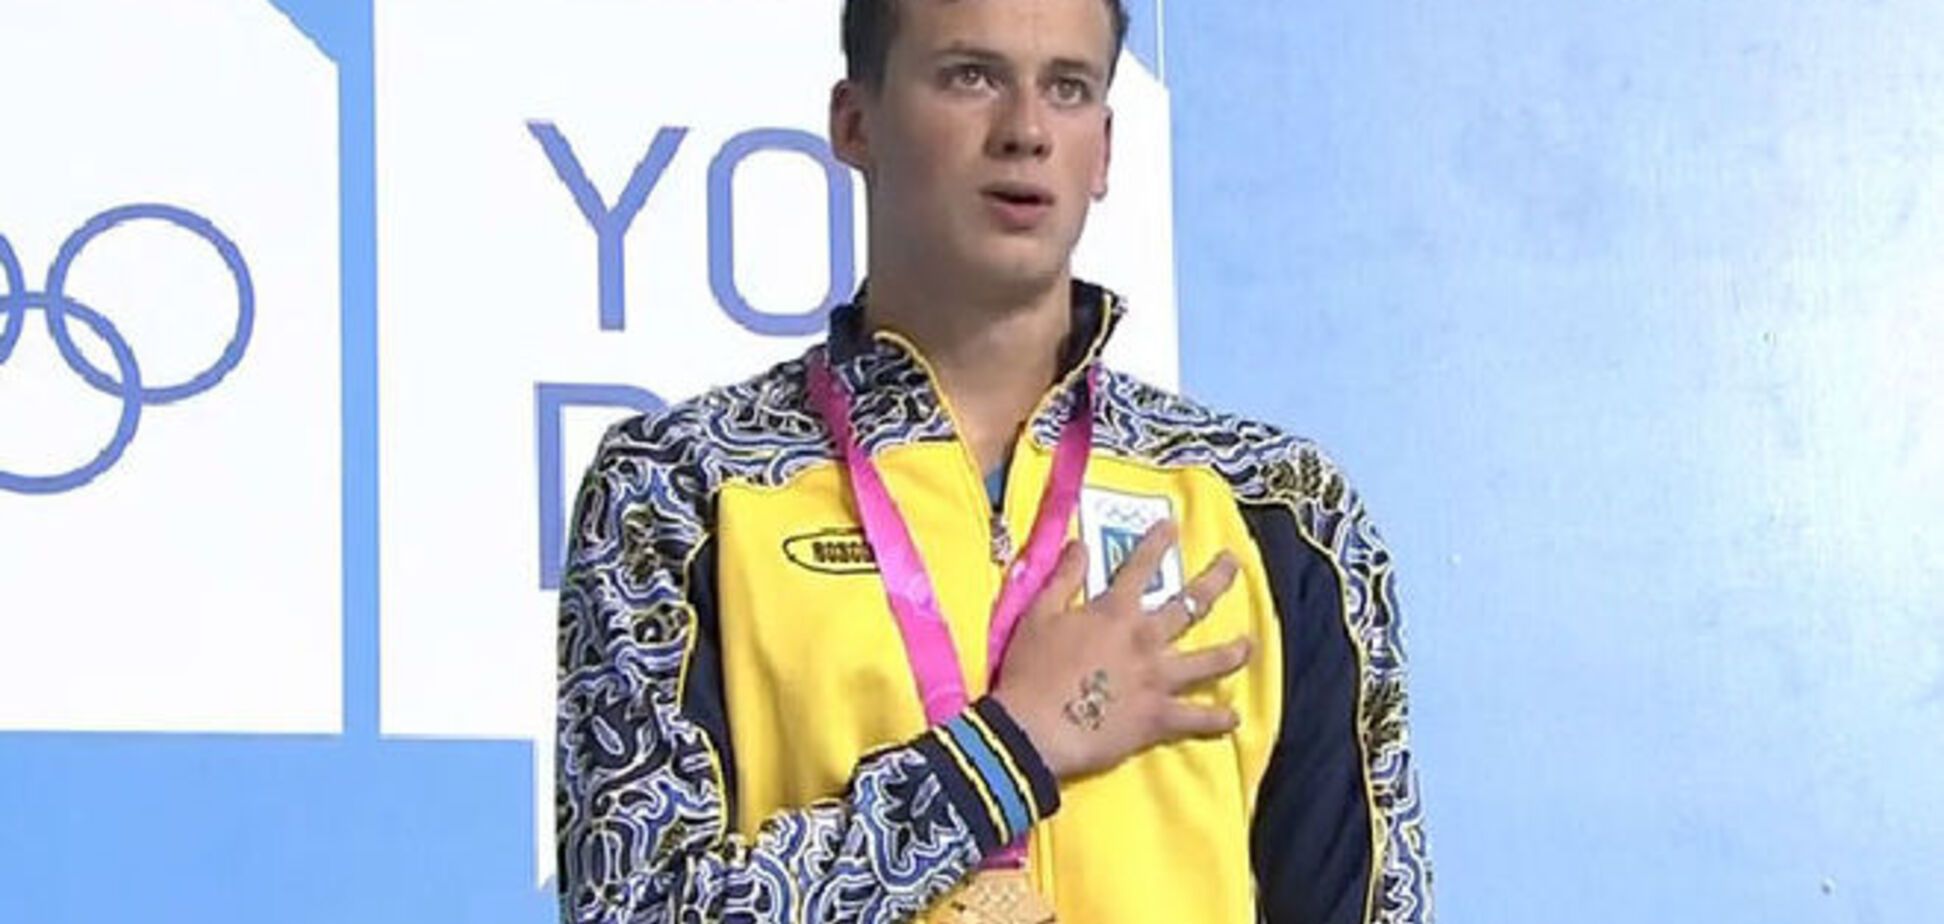 Украинский пловец получил солидное вознаграждение за 'золото' Олимпиады